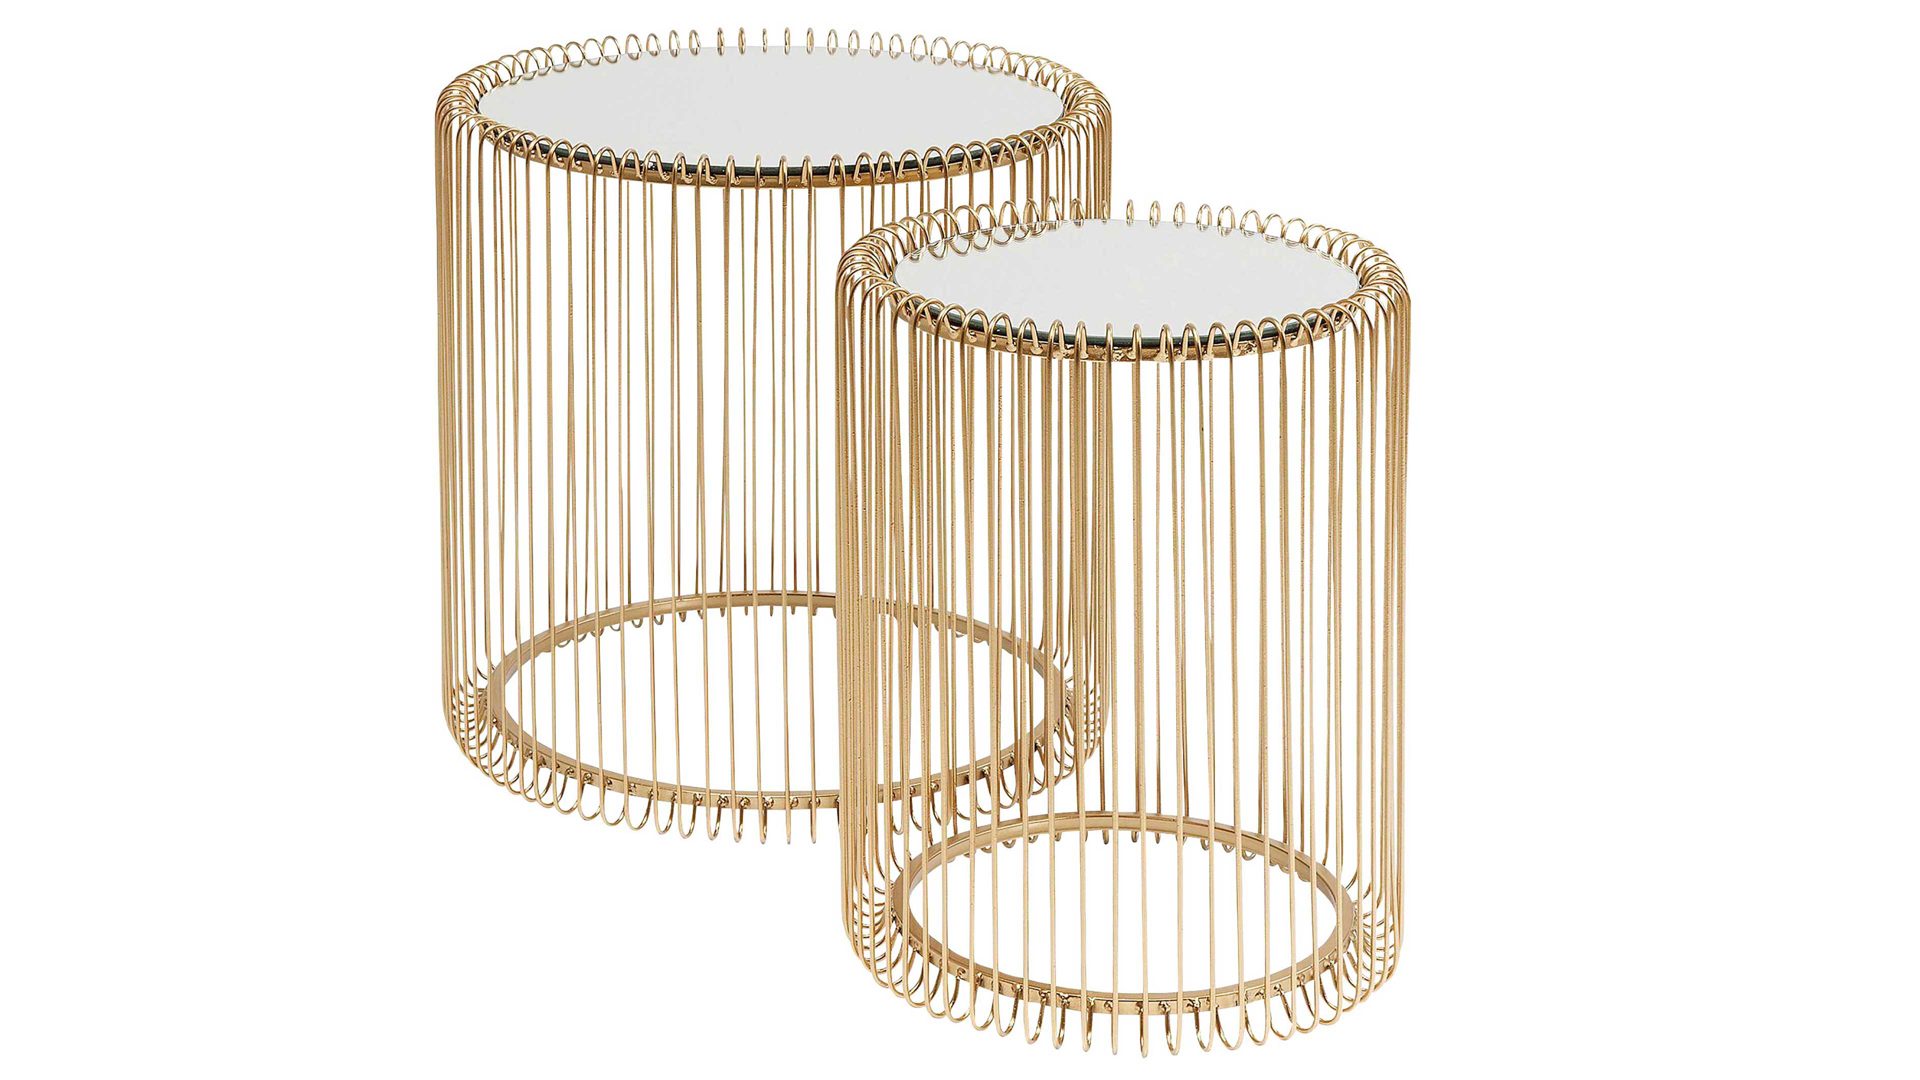 Beistelltisch-Set Kare design aus Metall in Metallfarben KARE DESIGN Beistelltisch-Set Wire als Wohnzimmermöbel goldfarbener Stahldraht & Glas  - zweiteilig